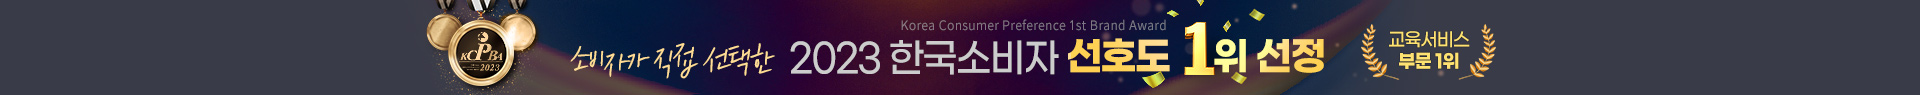 2023 한국소비자 선호도 교육서비스 부문 1위